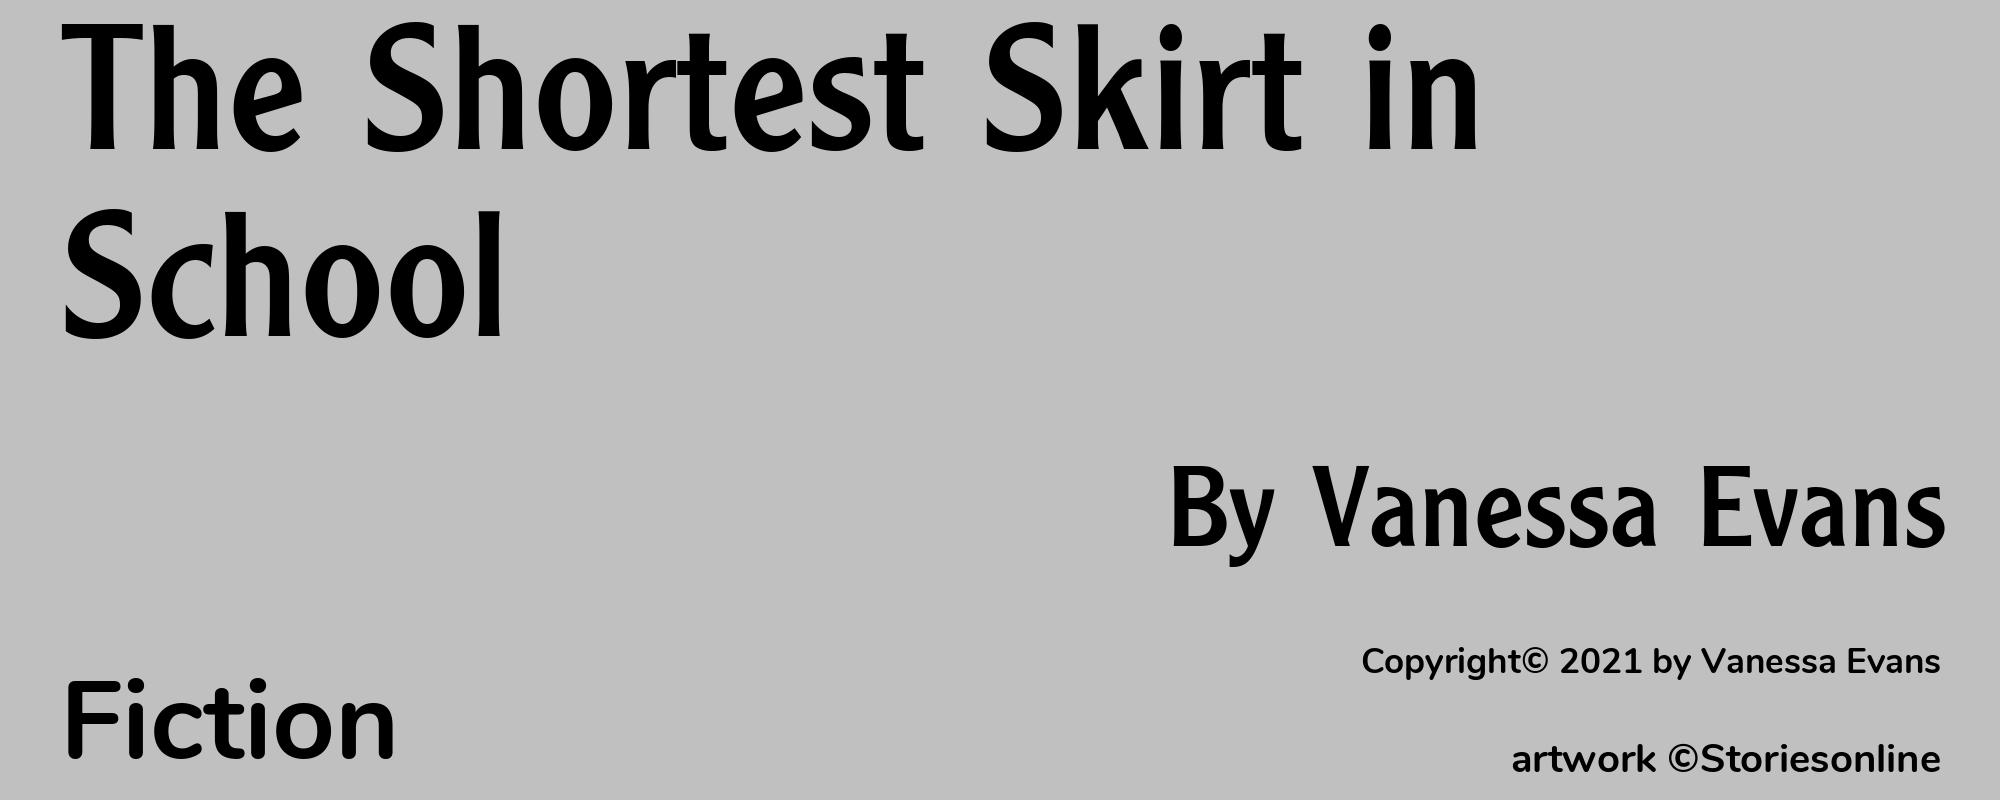 The Shortest Skirt in School - Cover